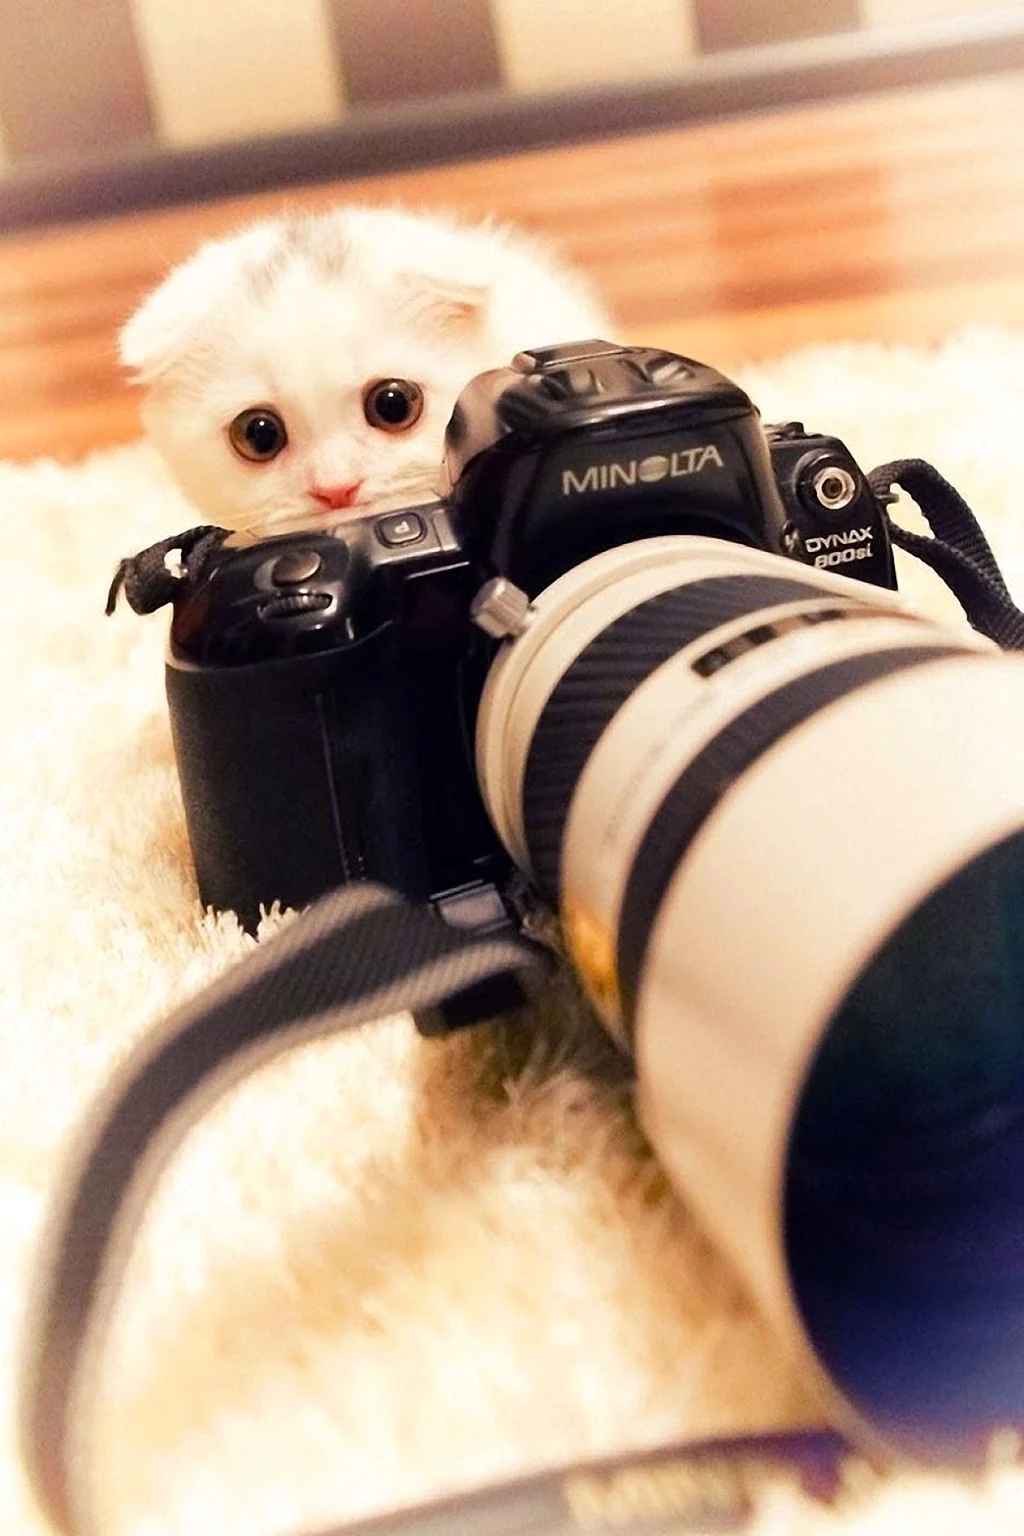 Кот с фотоаппаратом. Красивое животное